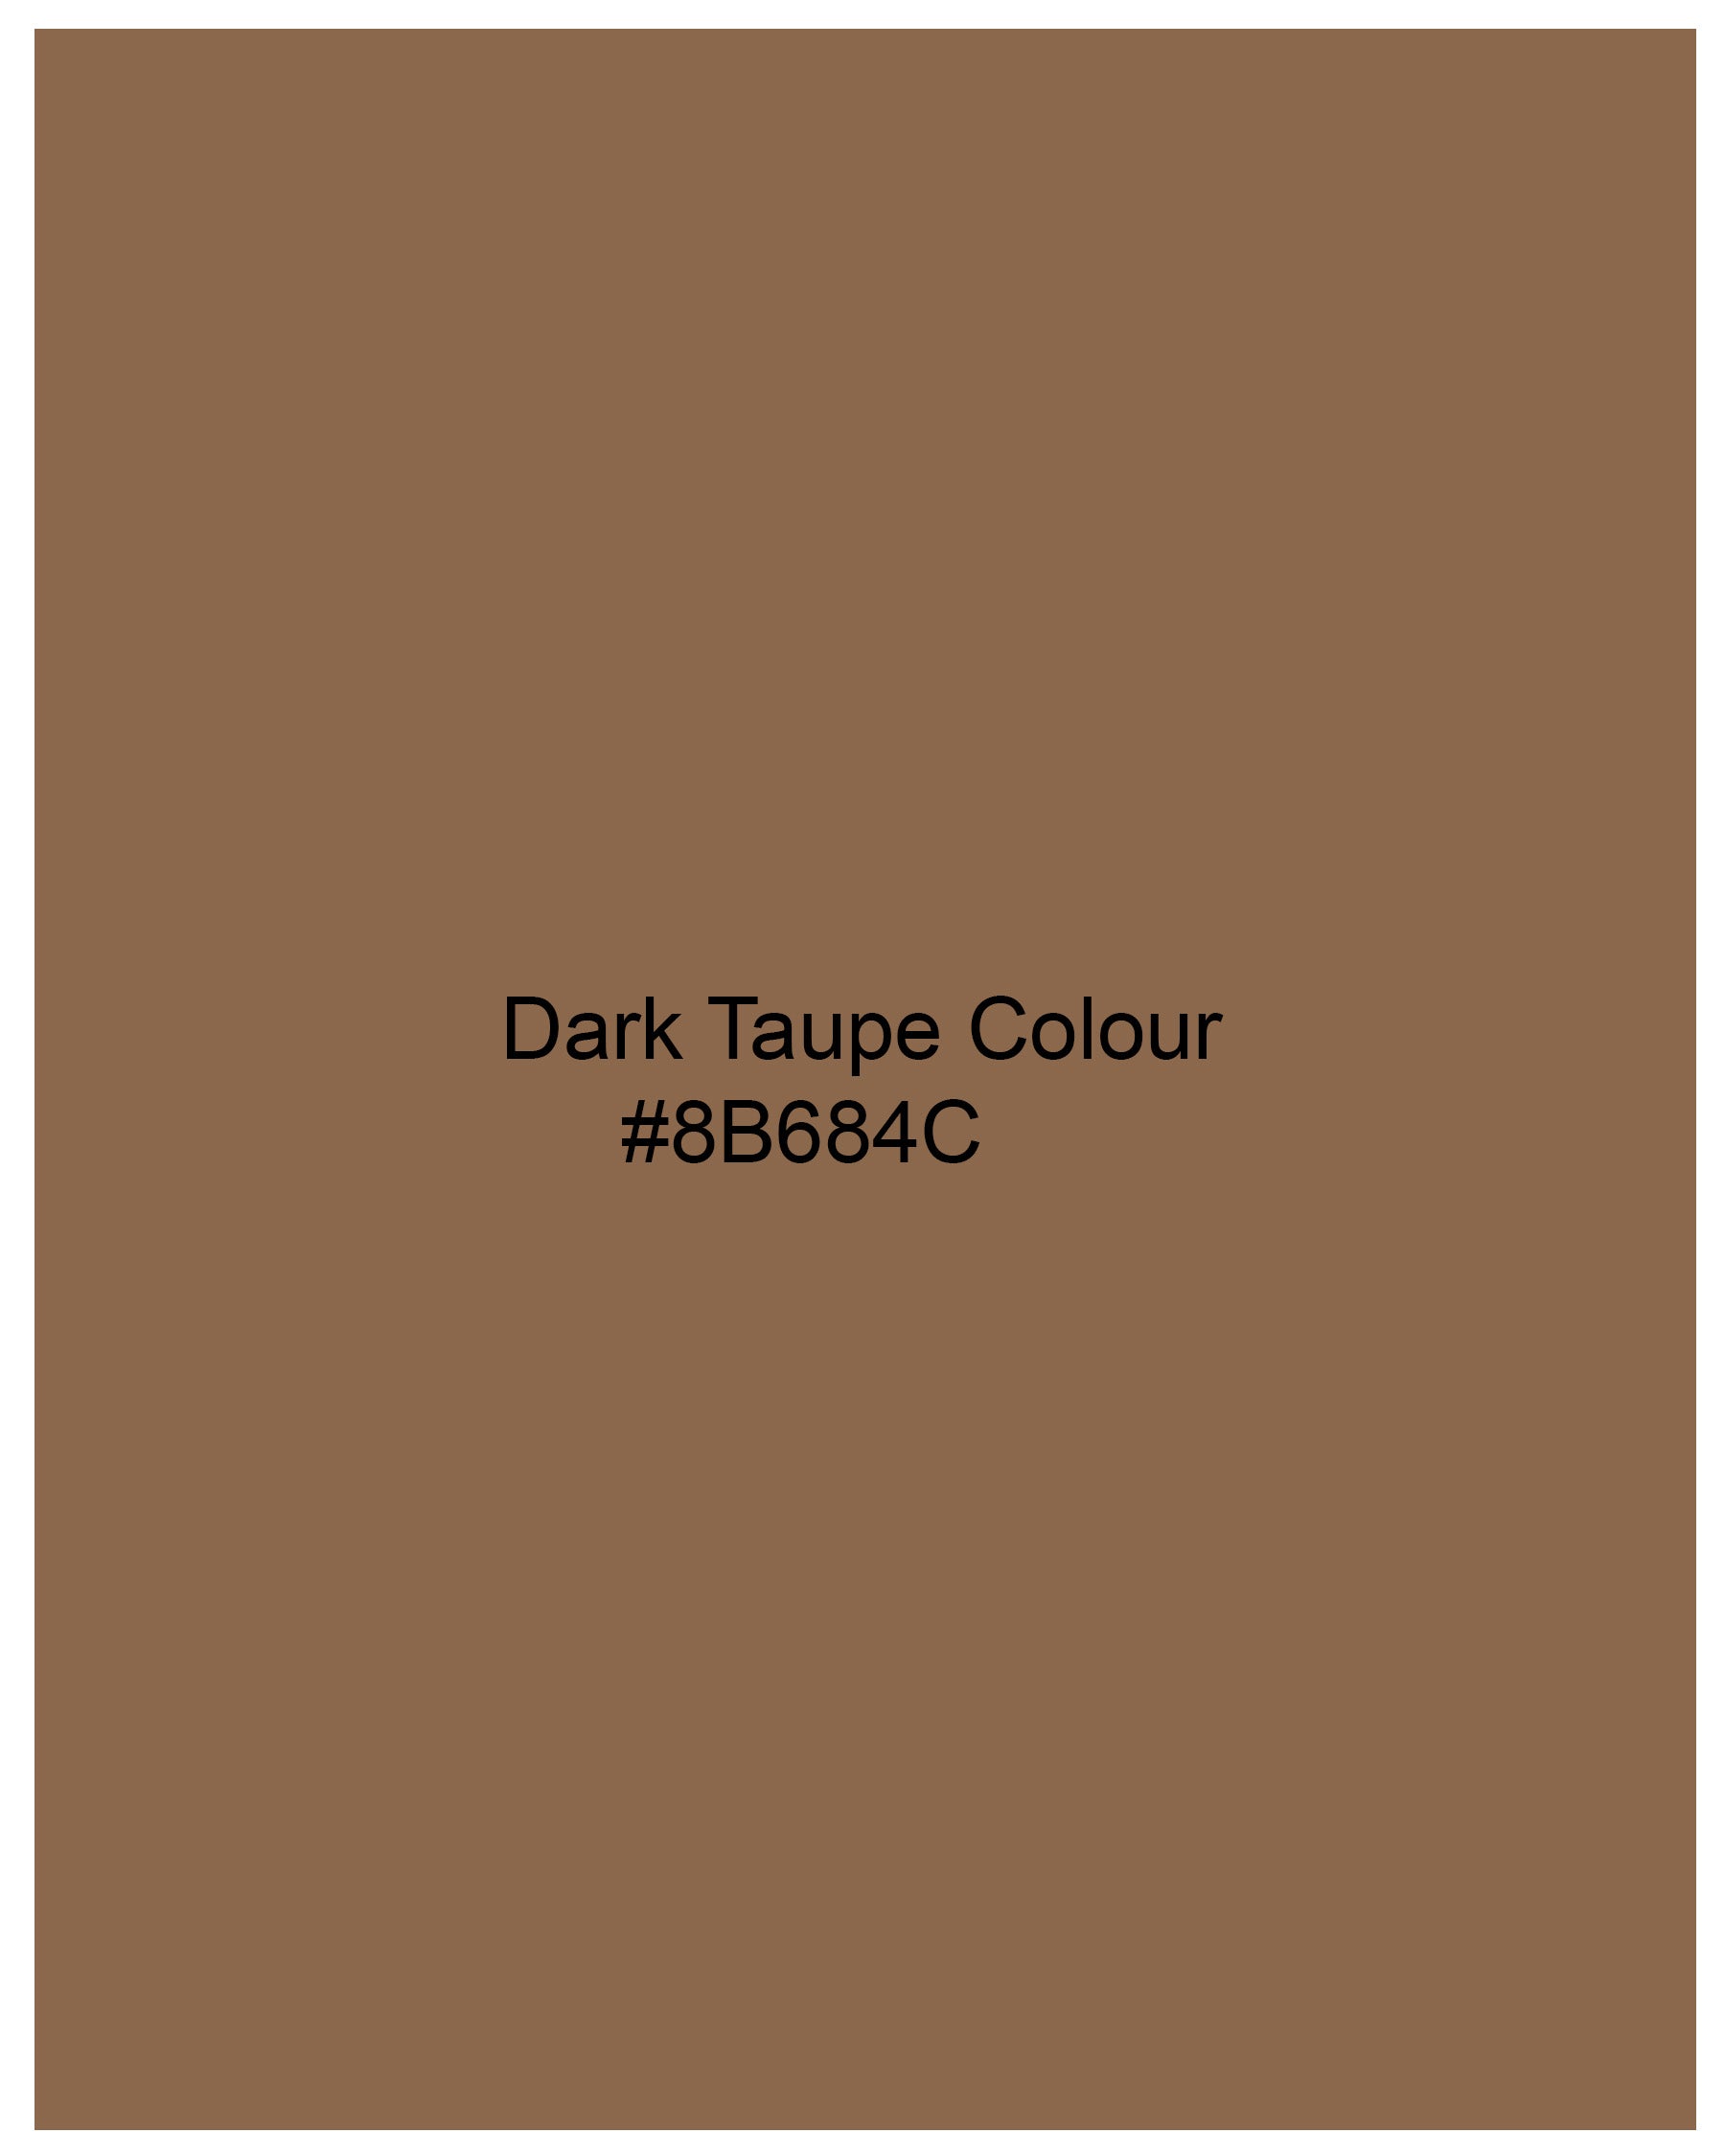 Dark Taupe Brown With Brown Striped Super Soft Premium Cotton Shirt 8058-CA-38, 8058-CA-H-38, 8058-CA-39, 8058-CA-H-39, 8058-CA-40, 8058-CA-H-40, 8058-CA-42, 8058-CA-H-42, 8058-CA-44, 8058-CA-H-44, 8058-CA-46, 8058-CA-H-46, 8058-CA-48, 8058-CA-H-48, 8058-CA-50, 8058-CA-H-50, 8058-CA-52, 8058-CA-H-52